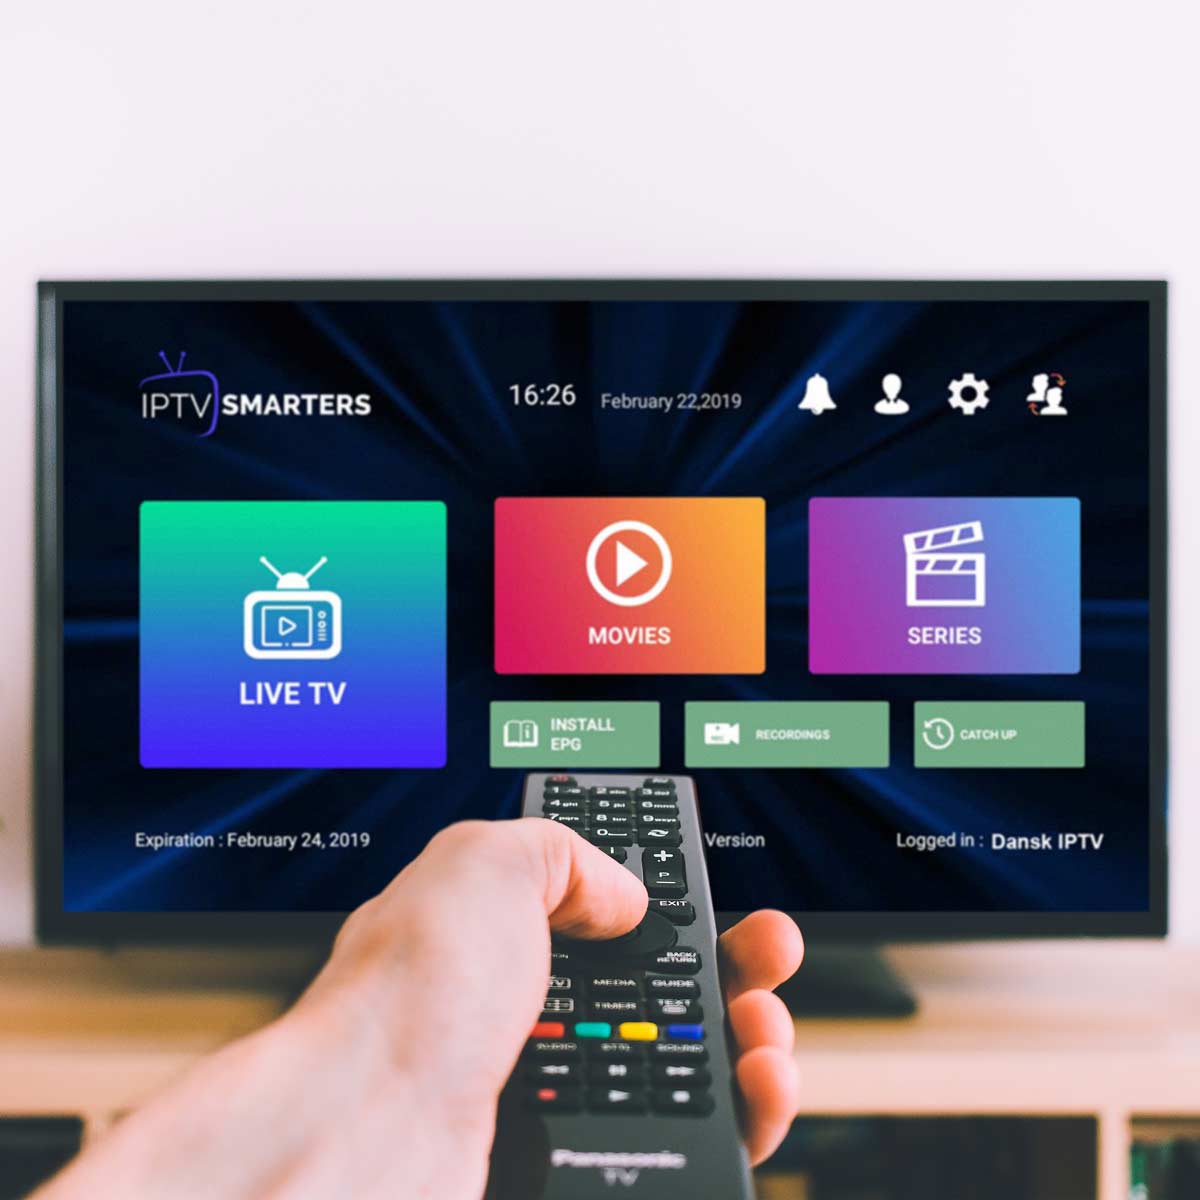 smartxiptv - Melhor Provedor de Serviços de Assinatura de IPTV - SmartxIPTV